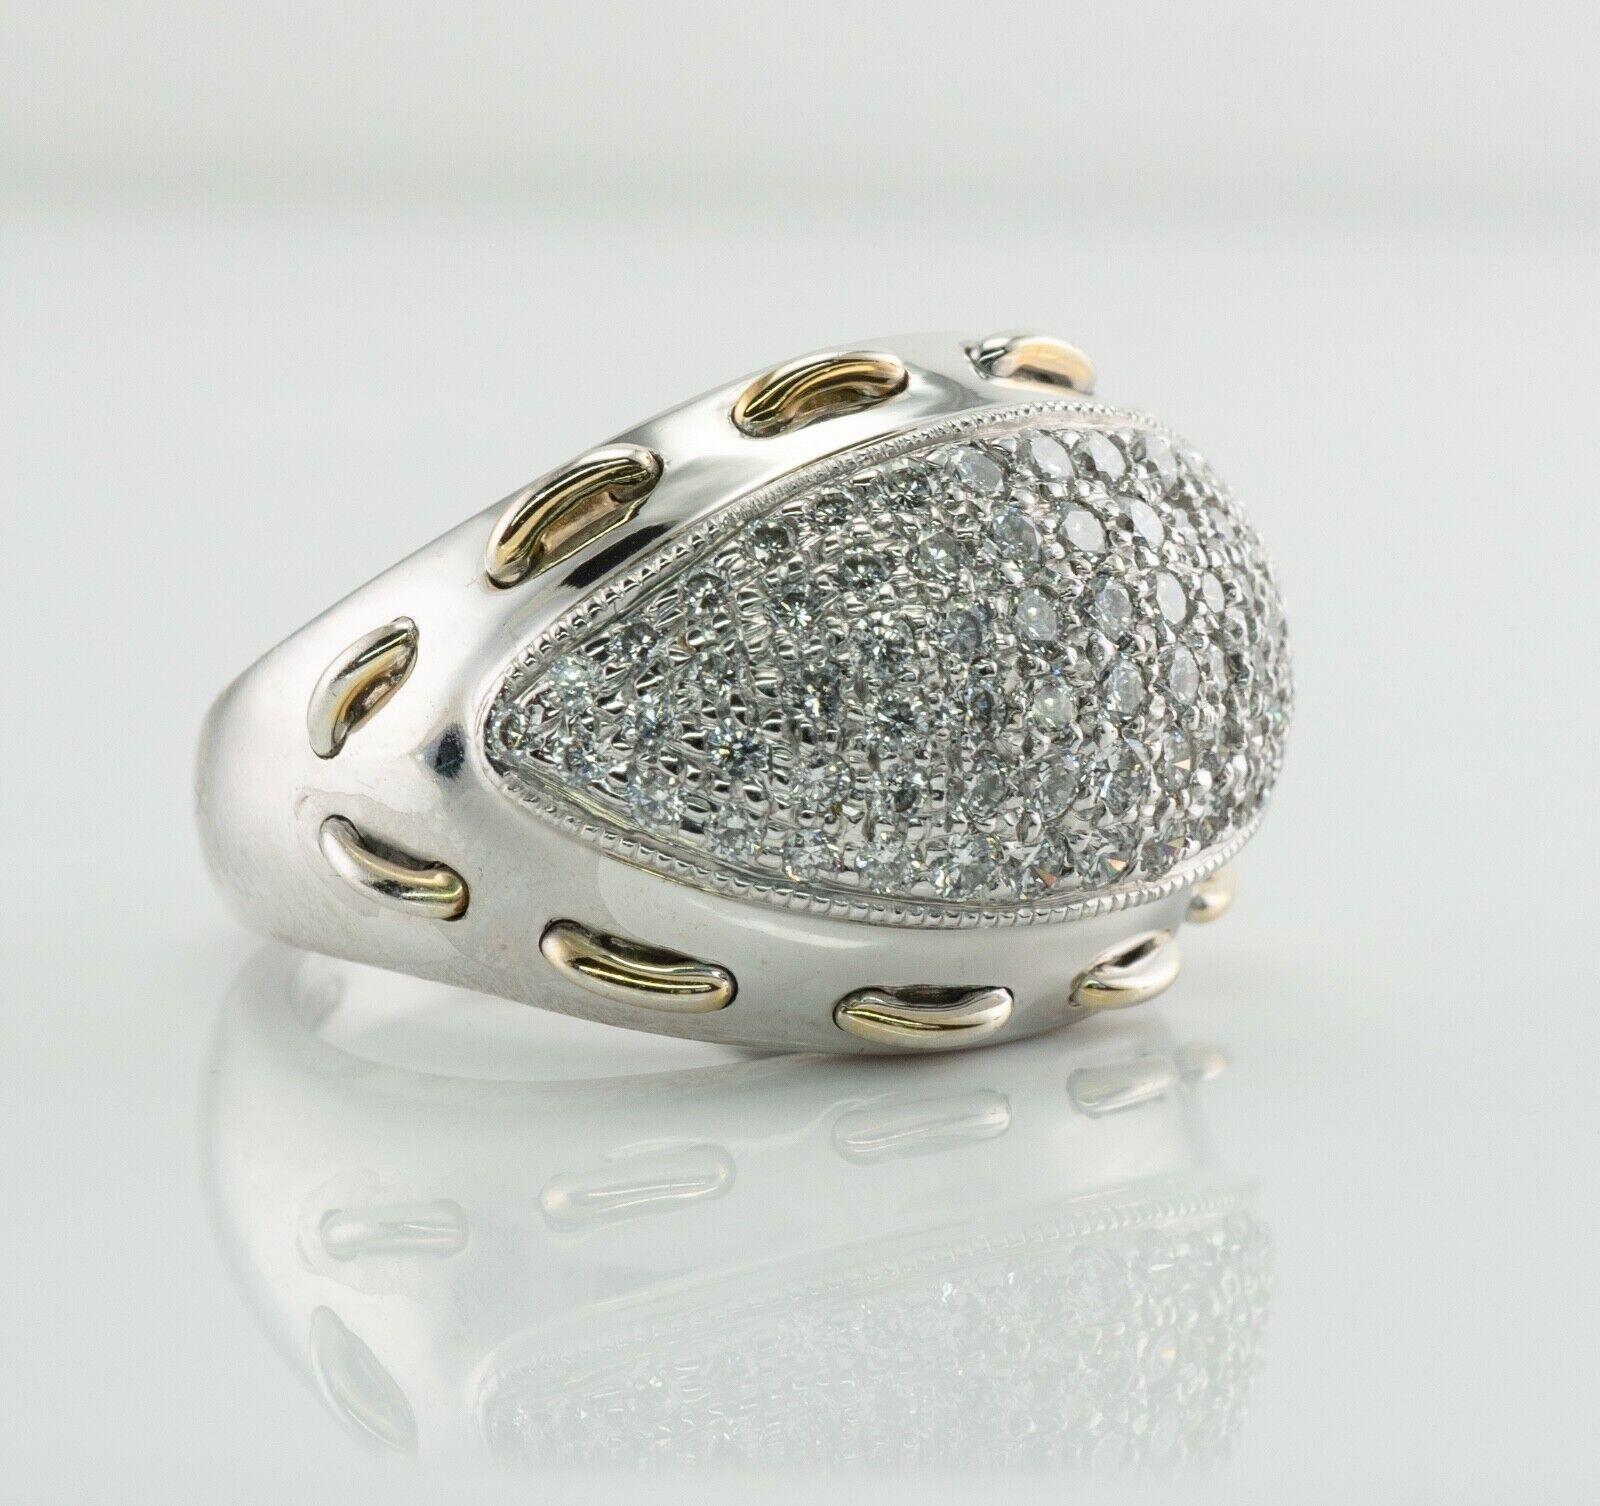 Diamantring gewölbter 14K Goldband Vintage 1,20 TDW mit Diamanten

Dieser wunderschöne gewölbte Ring ist aus massivem 14-karätigem Weißgold mit Akzenten aus Gelbgold gefertigt. Die Vorderseite des Rings ist mit weißen und feurigen Diamanten der